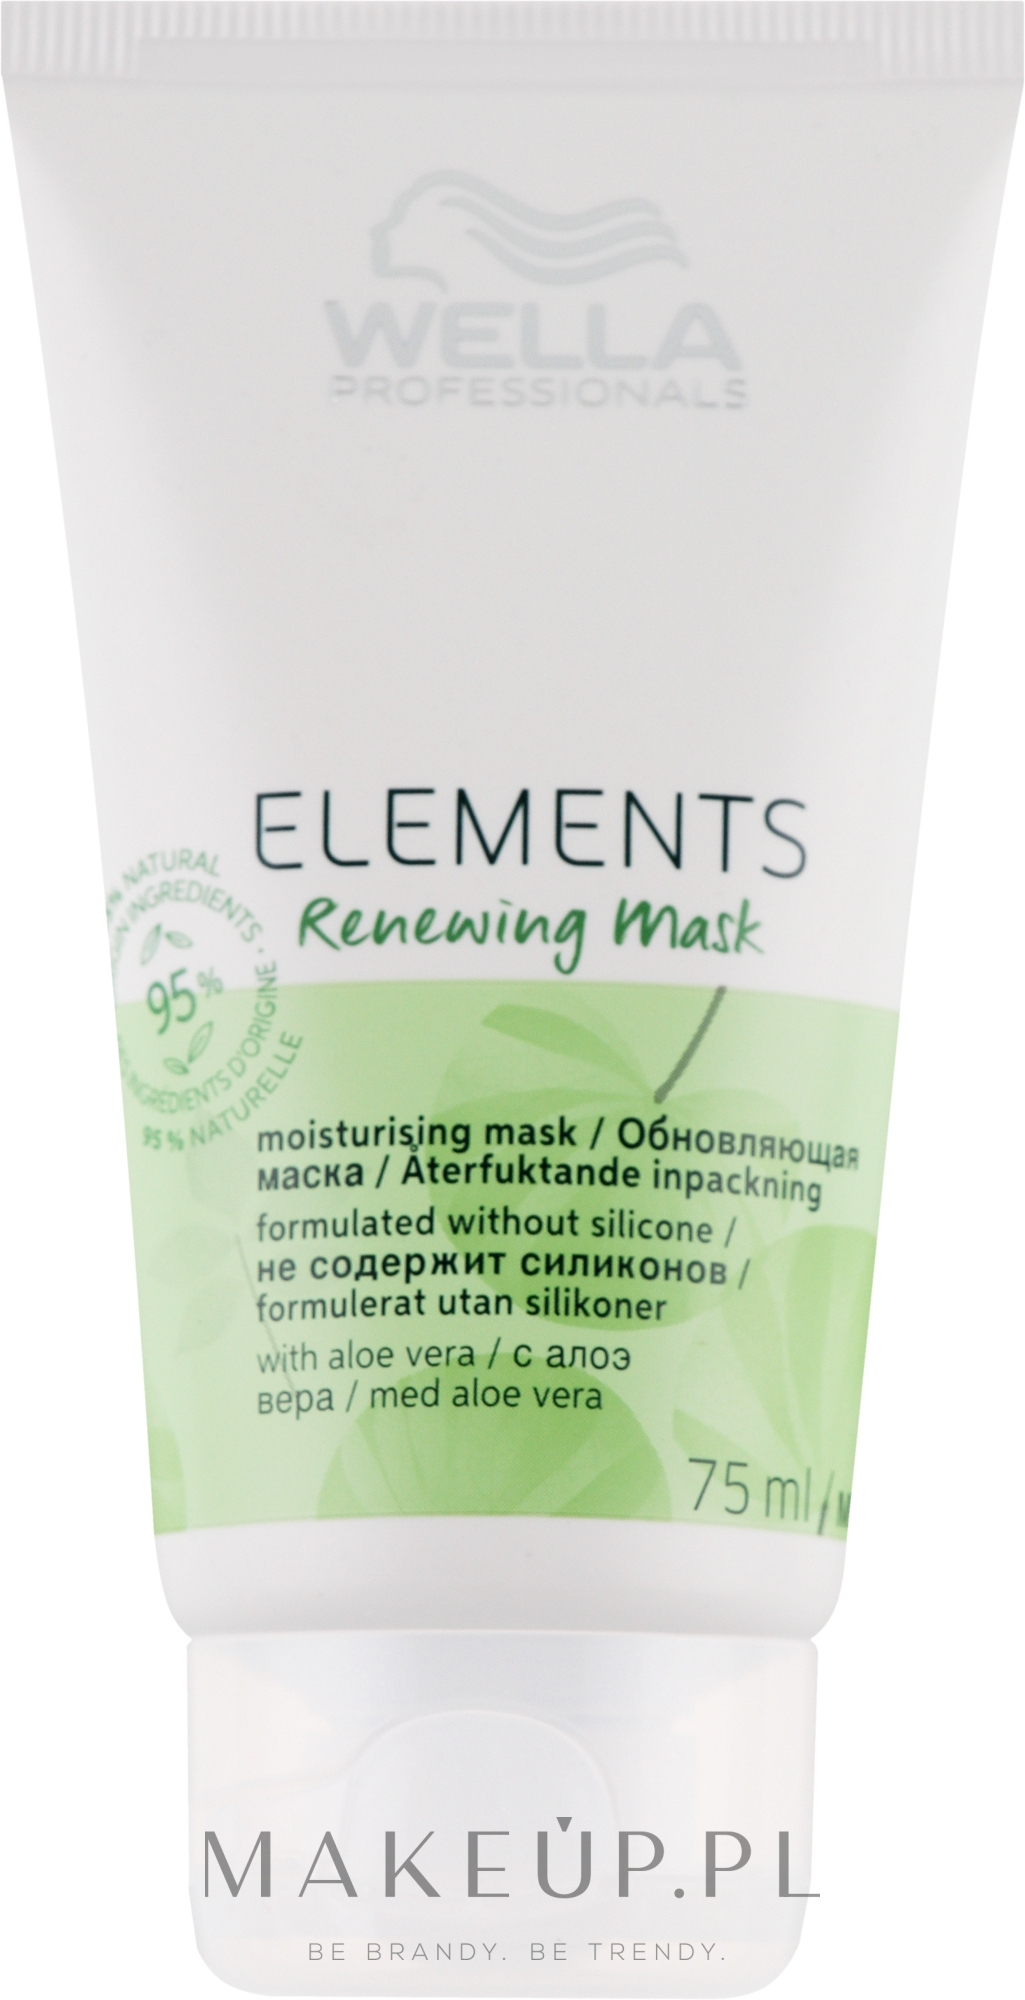 Nawilżająca maska regenerująca do wszystkich rodzajów włosów - Wella Professionals Elements Renewing Mask — Zdjęcie 75 ml